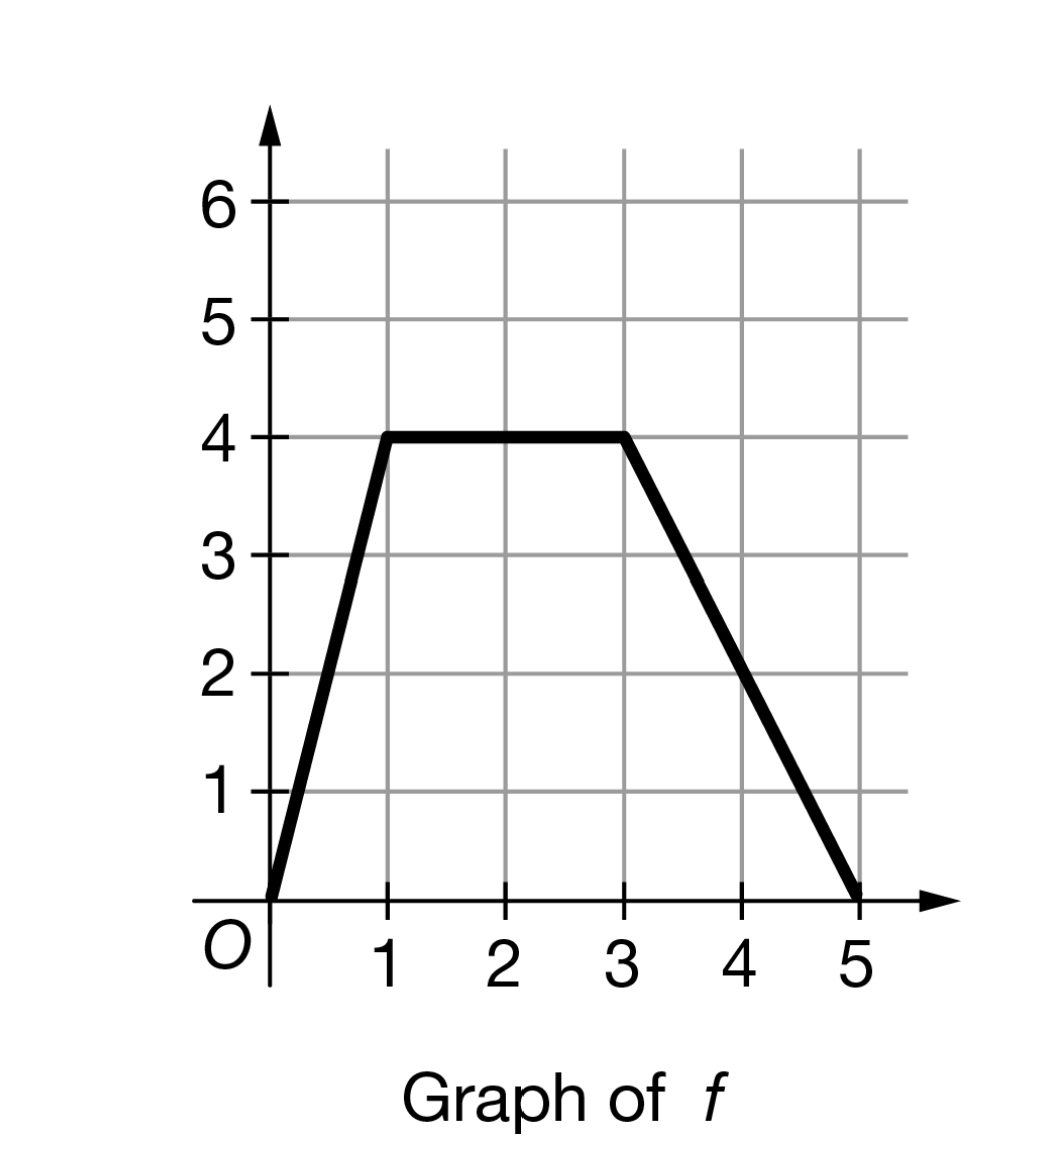 4
3
2
1
1
2 3 4 5
Graph of f
LO
